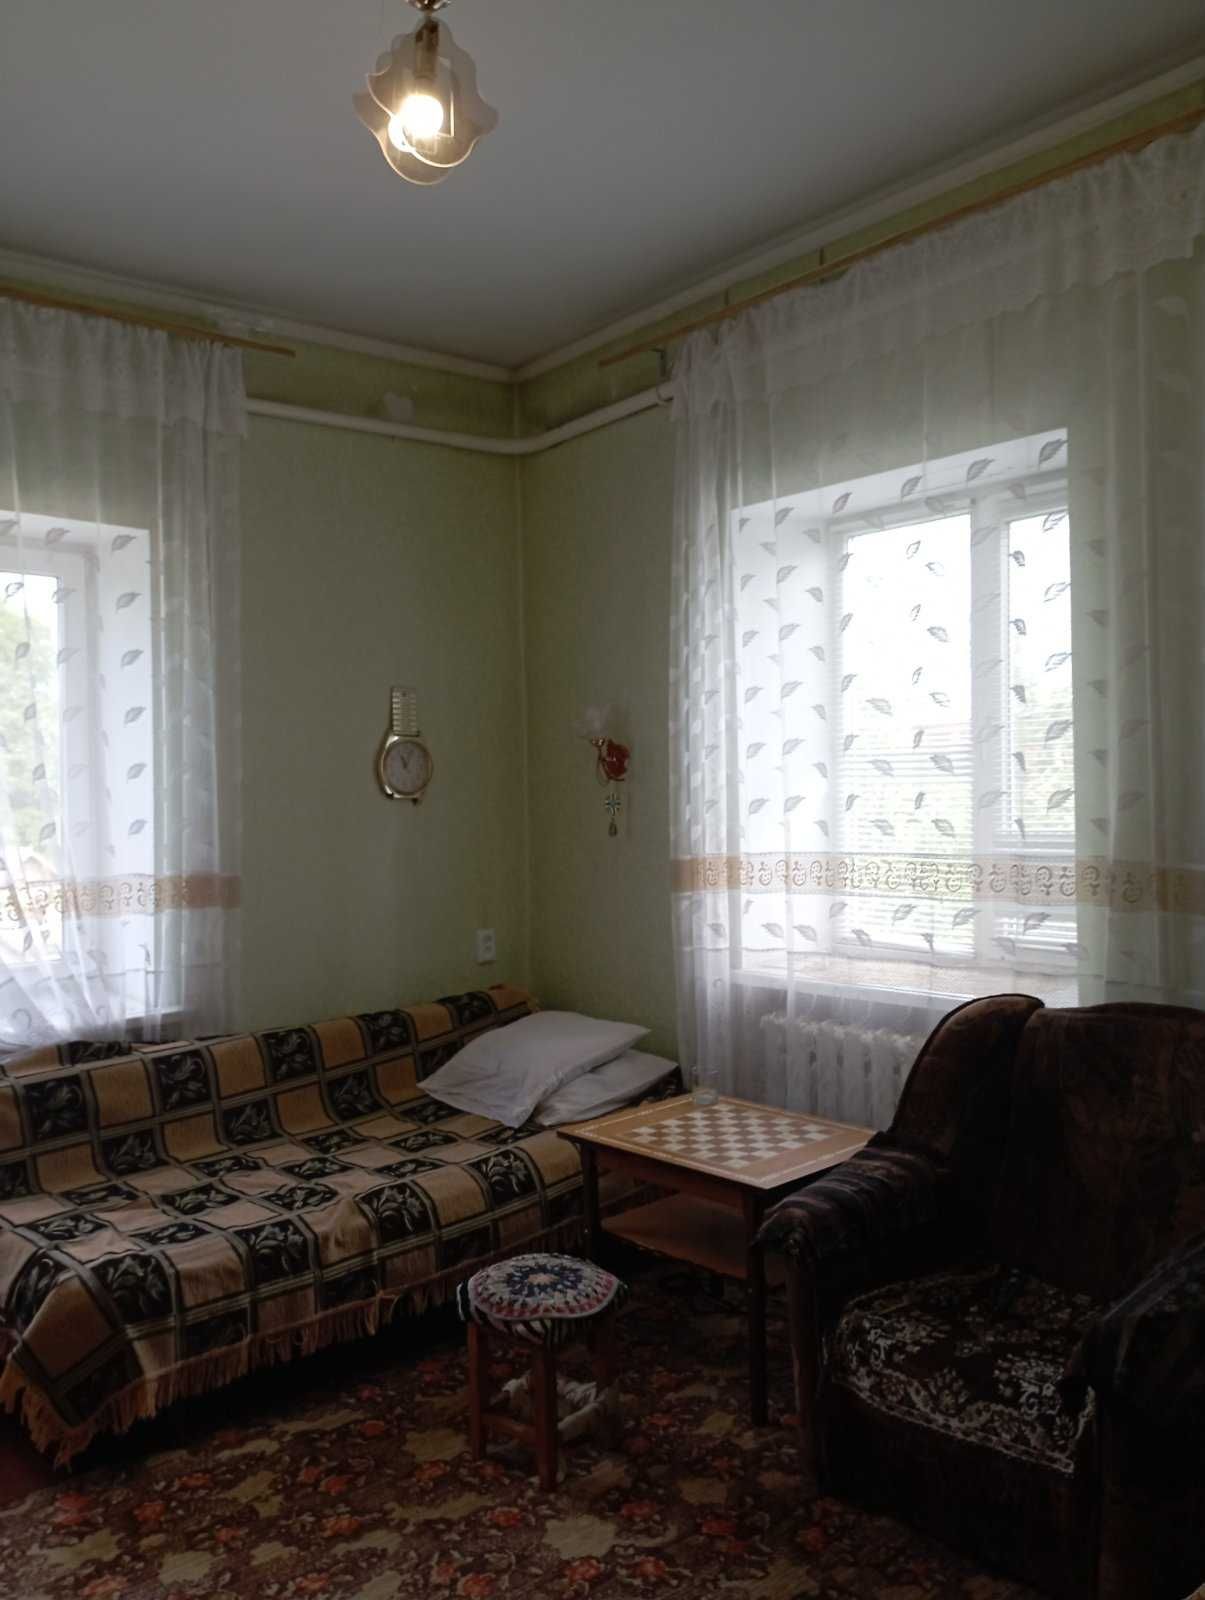 Продається 2 кімнатна квартира по вул Воровського